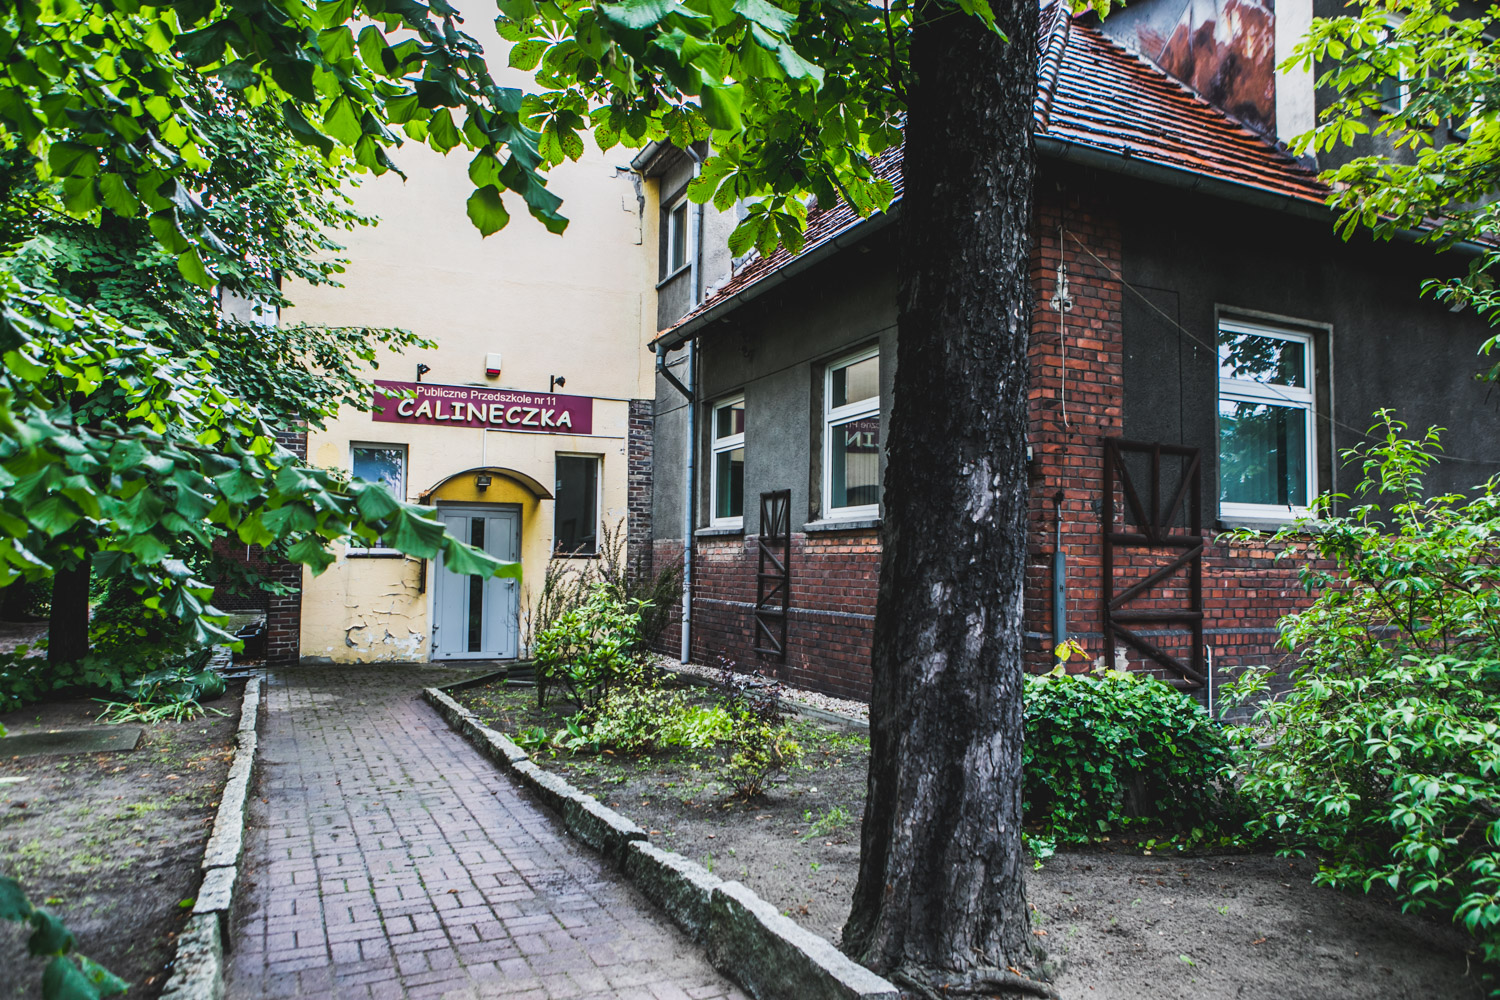 Zdjęcie przedstawia budynek dawnego przedszkola Calineczka przy ulicy Wolności w Ostrowie Wielkopolskim. Do budynku prowadzi chodnik. Widoczna jest zieleń. 